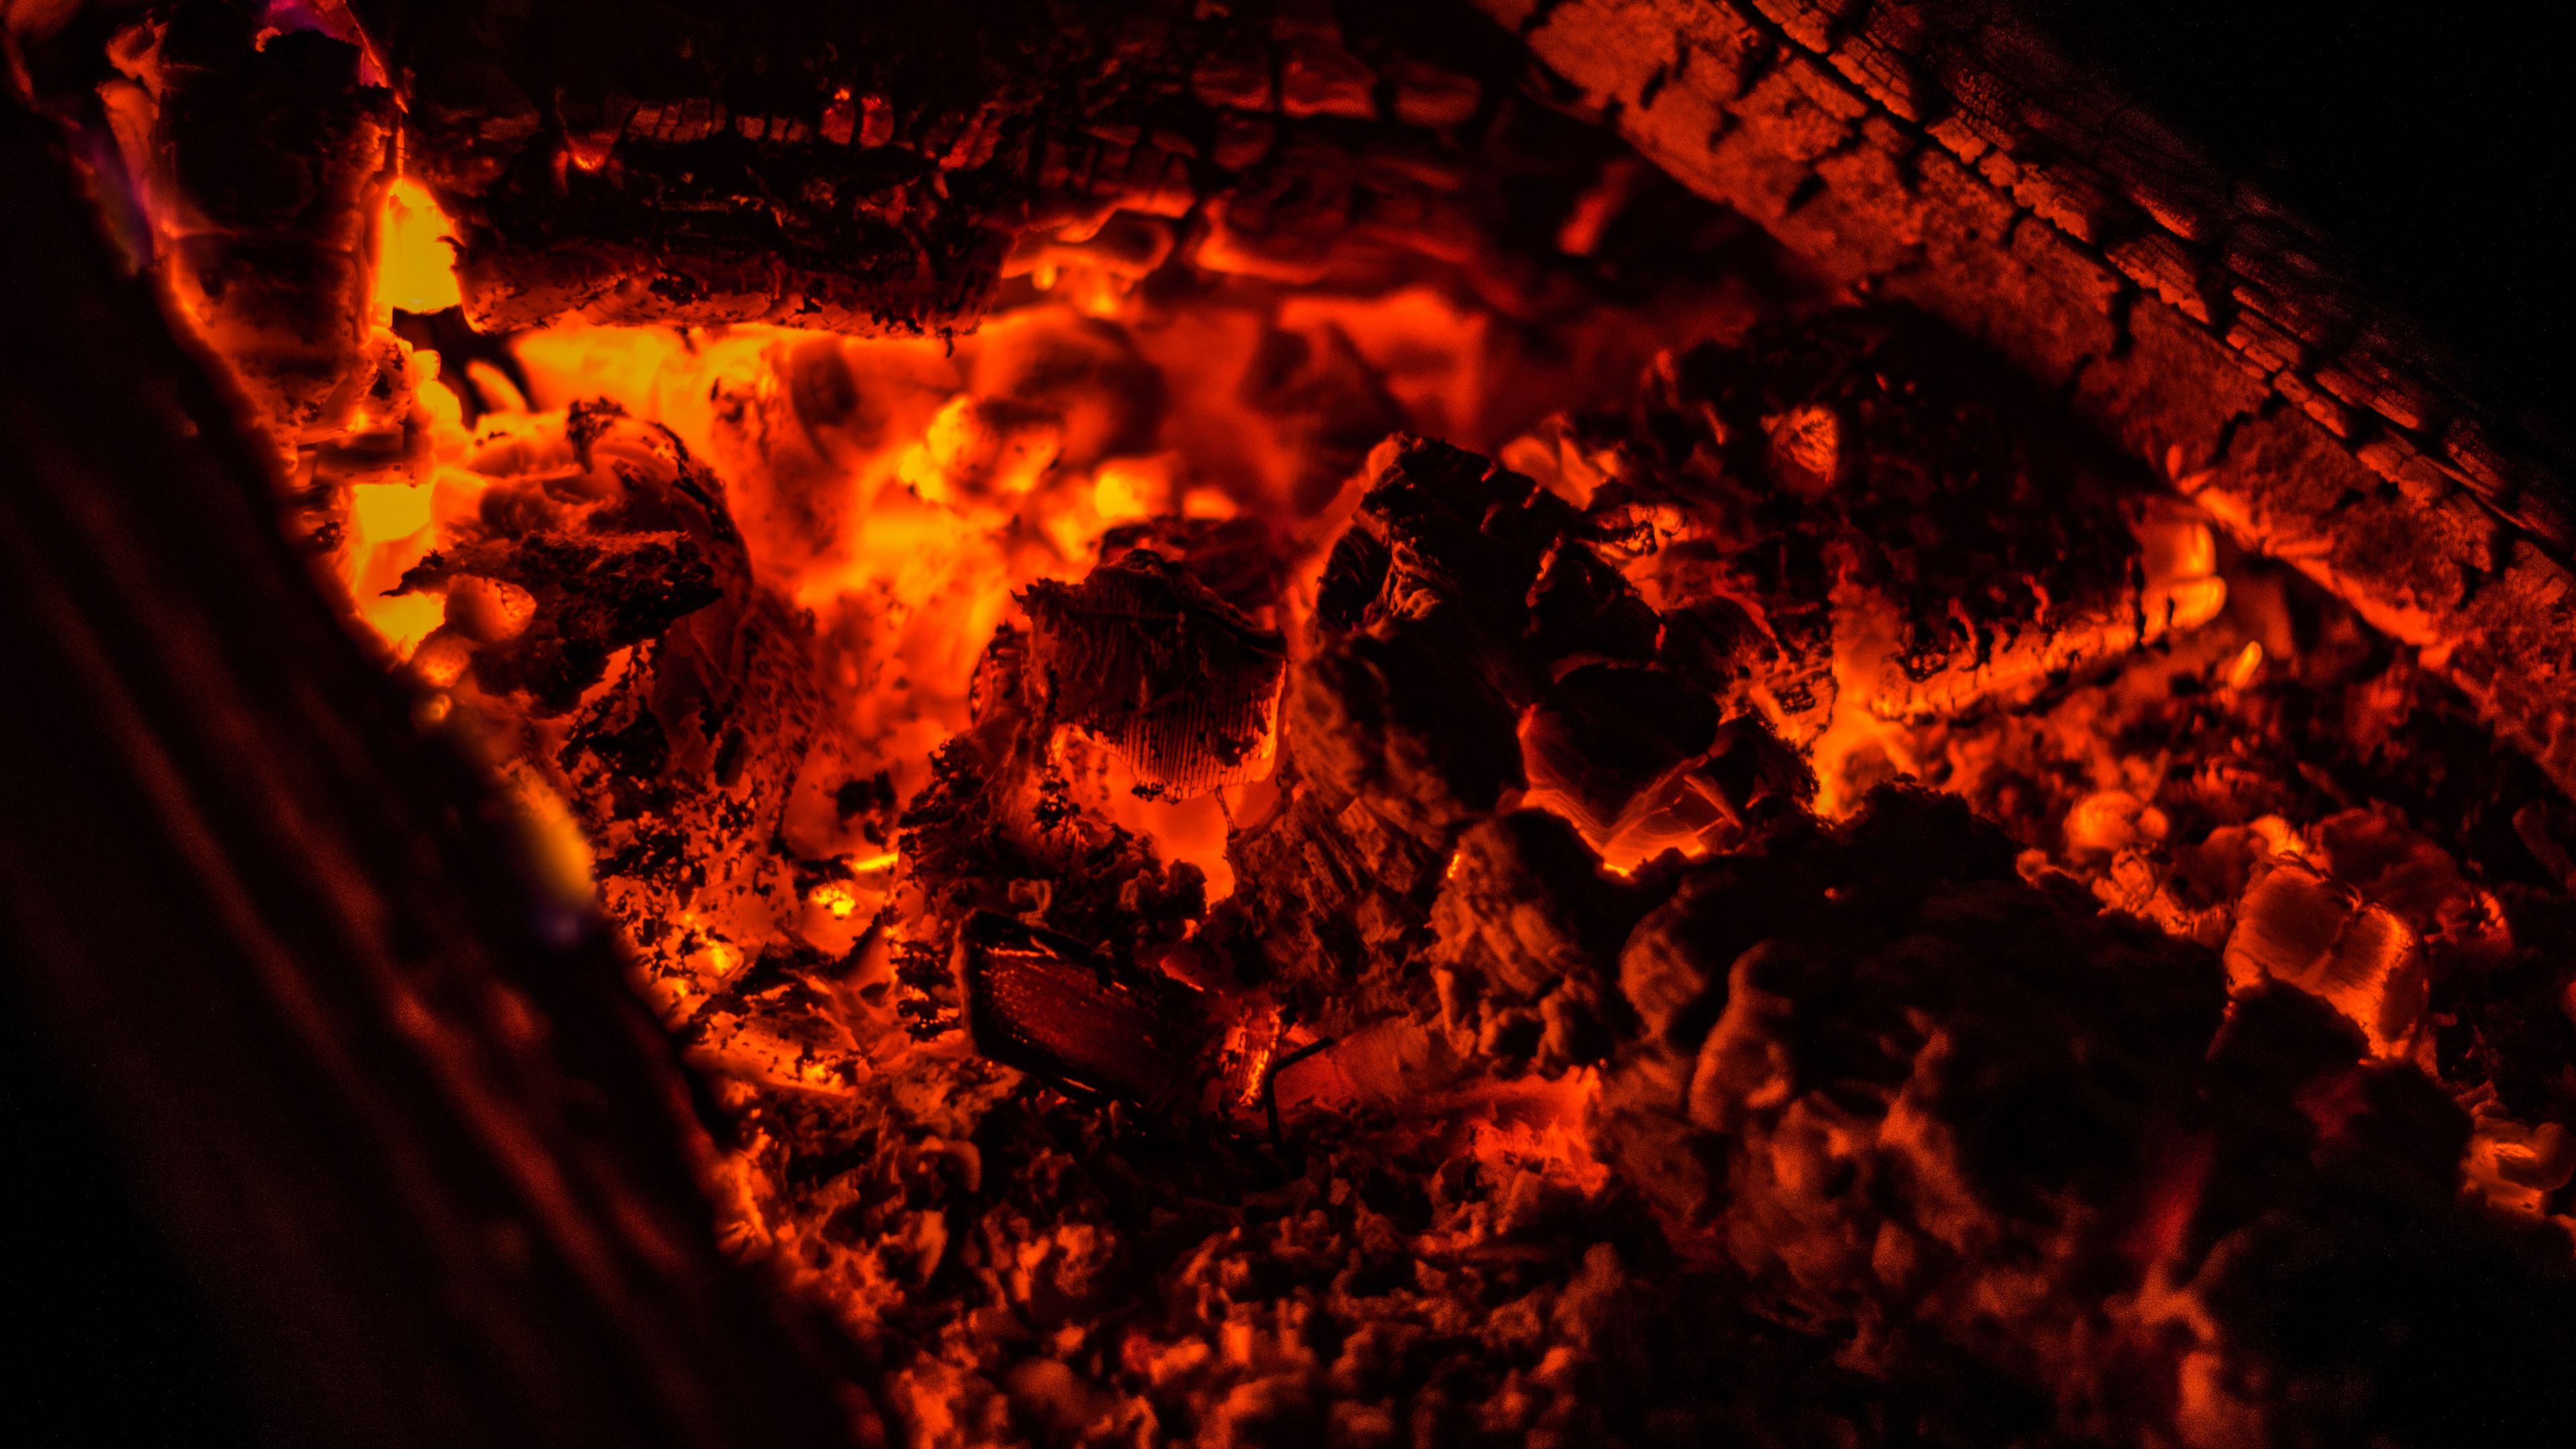 Download wallpaper 3840x2160 bonfire, ash, fire, coals, smoldering 4k uhd 16:9 HD background